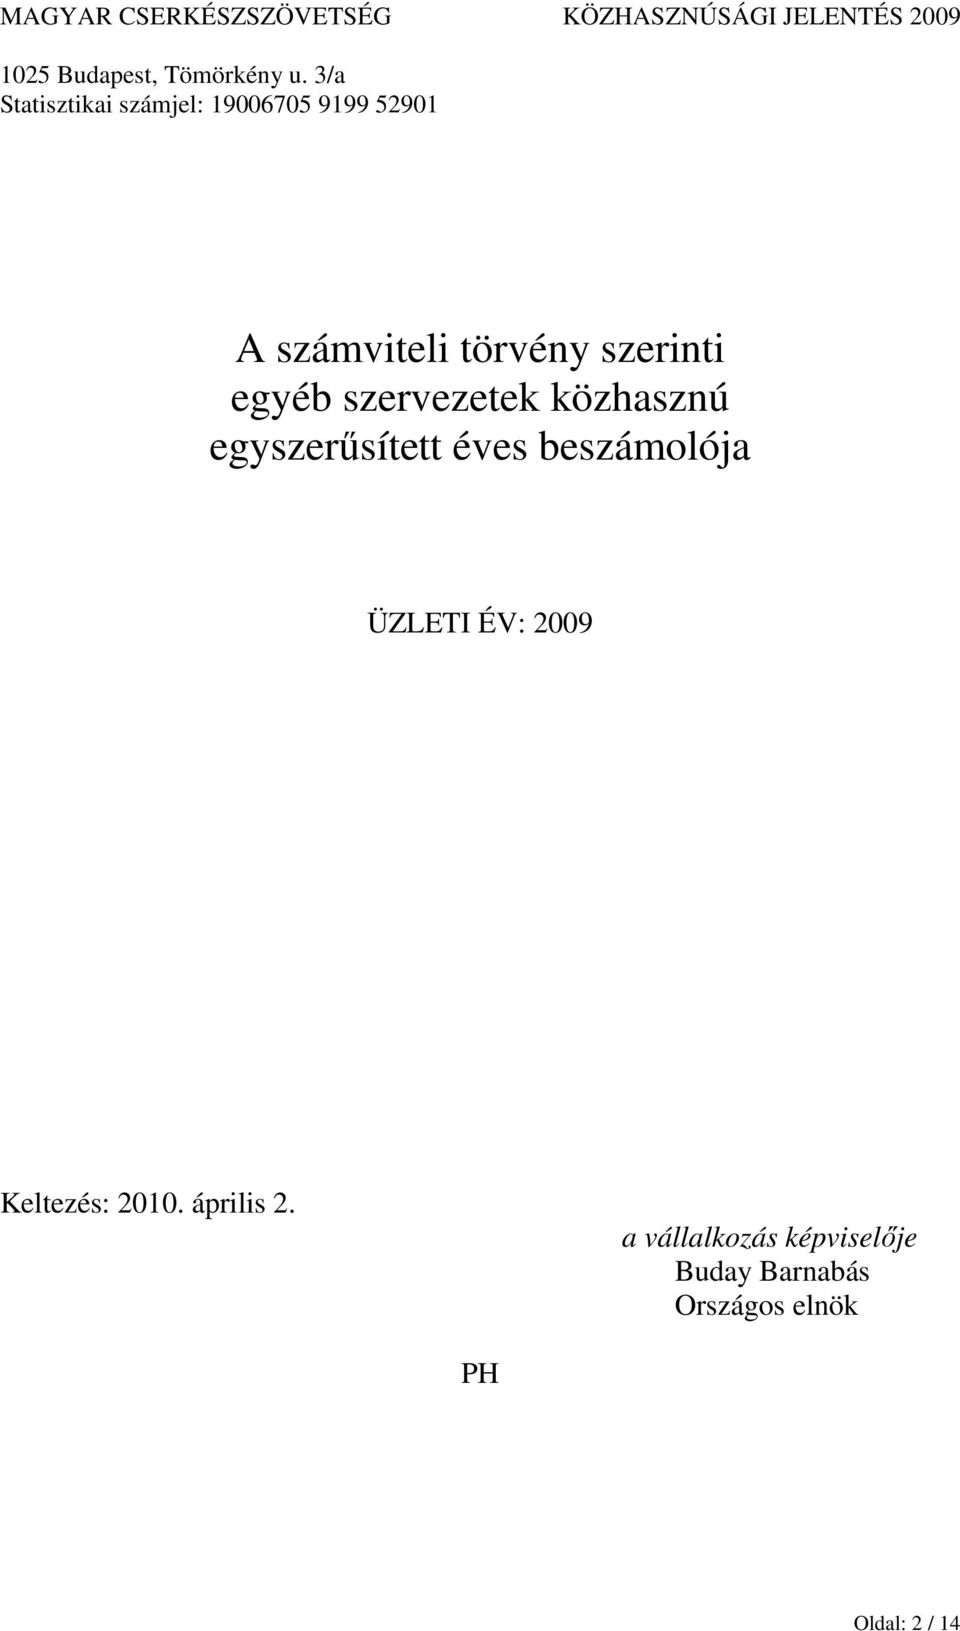 éves beszámolója ÜZLETI ÉV: 2009